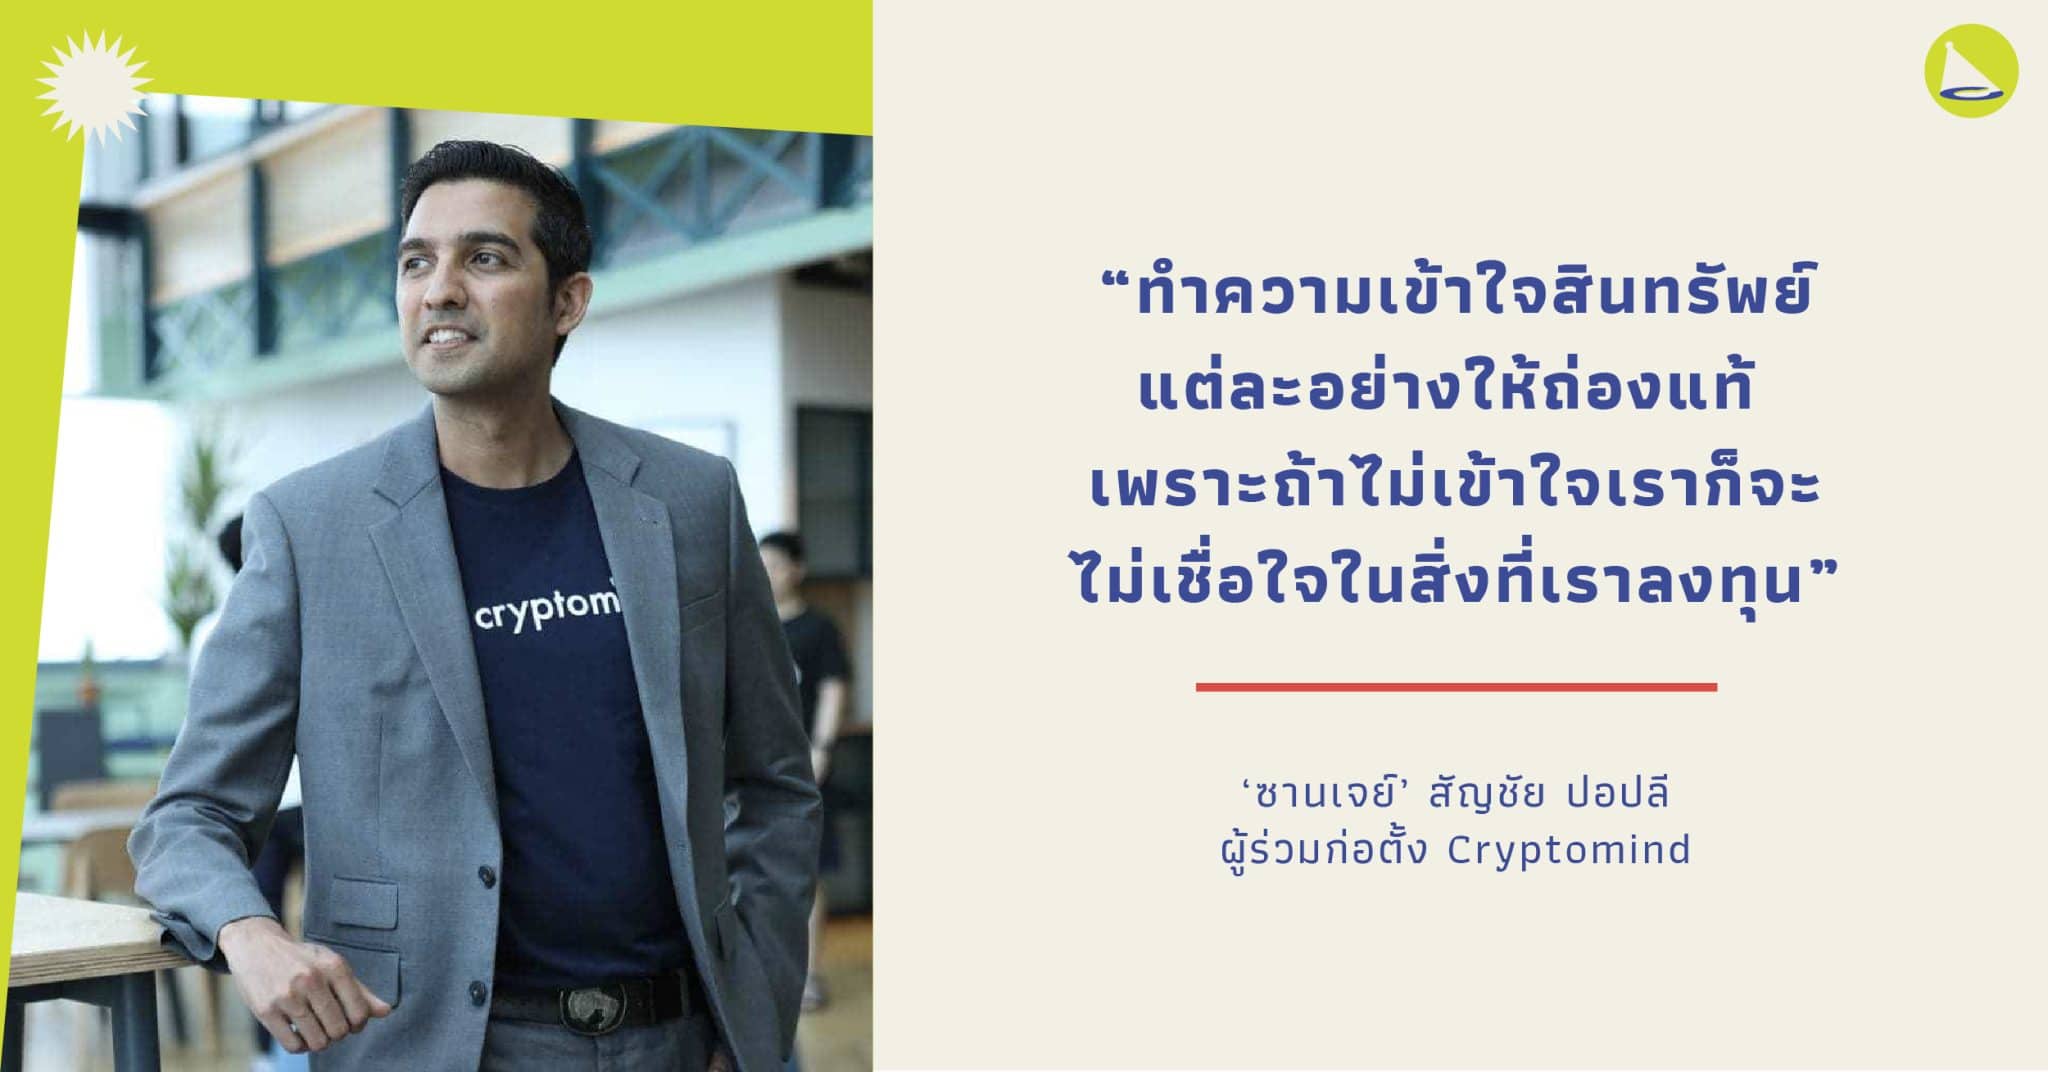 สัญชัย ปอปลี ผู้บุกเบิกสกุลเงินดิจิทัลในไทย | Career Fact